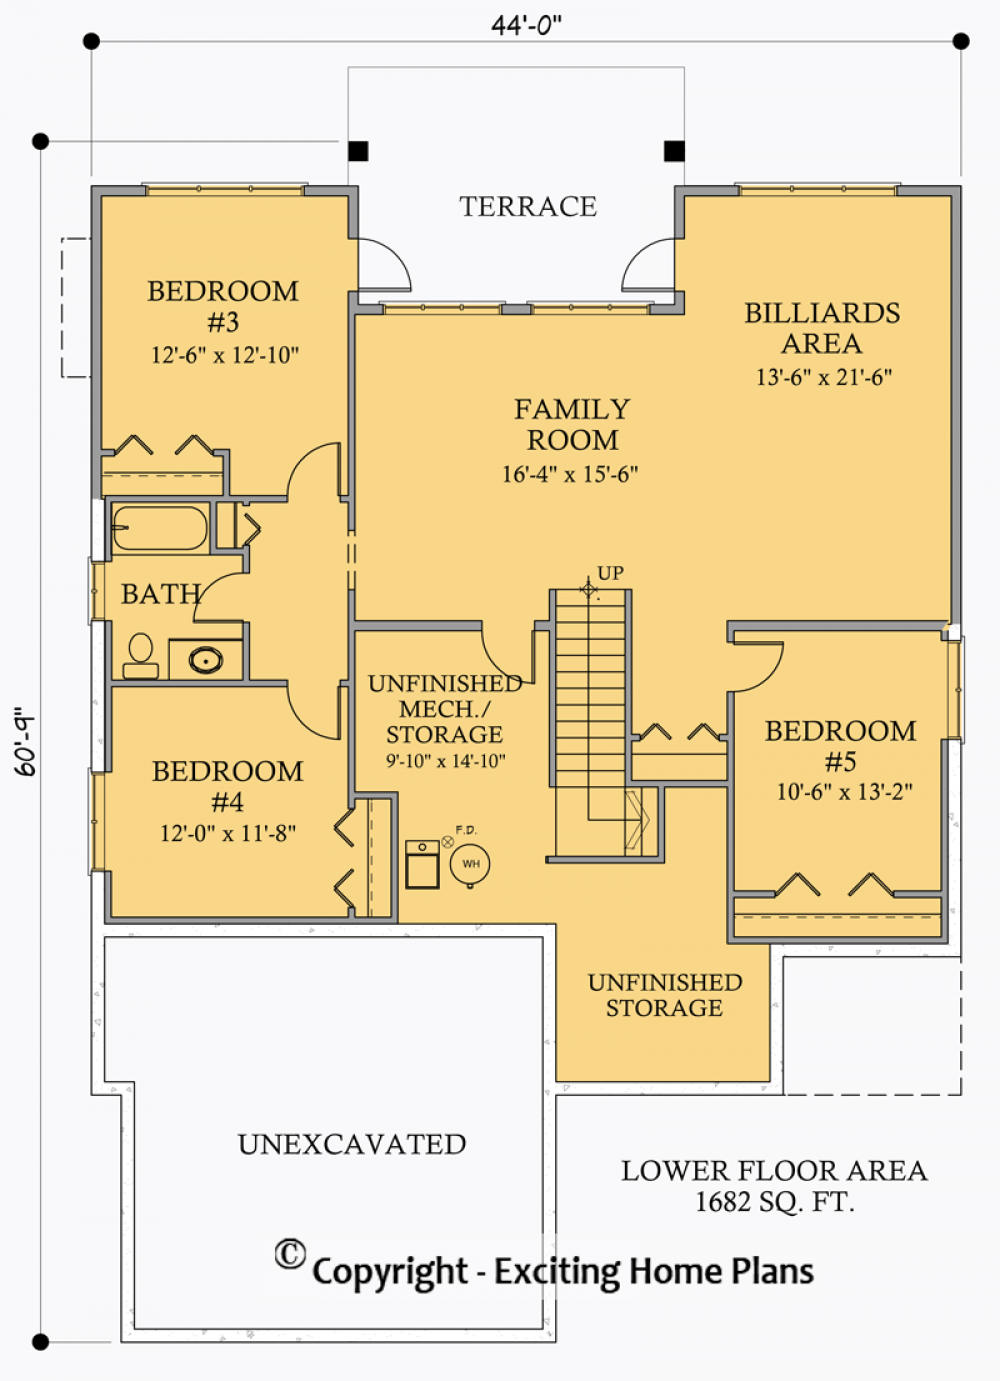 House Plan E1030-10 Lower Floor Plan